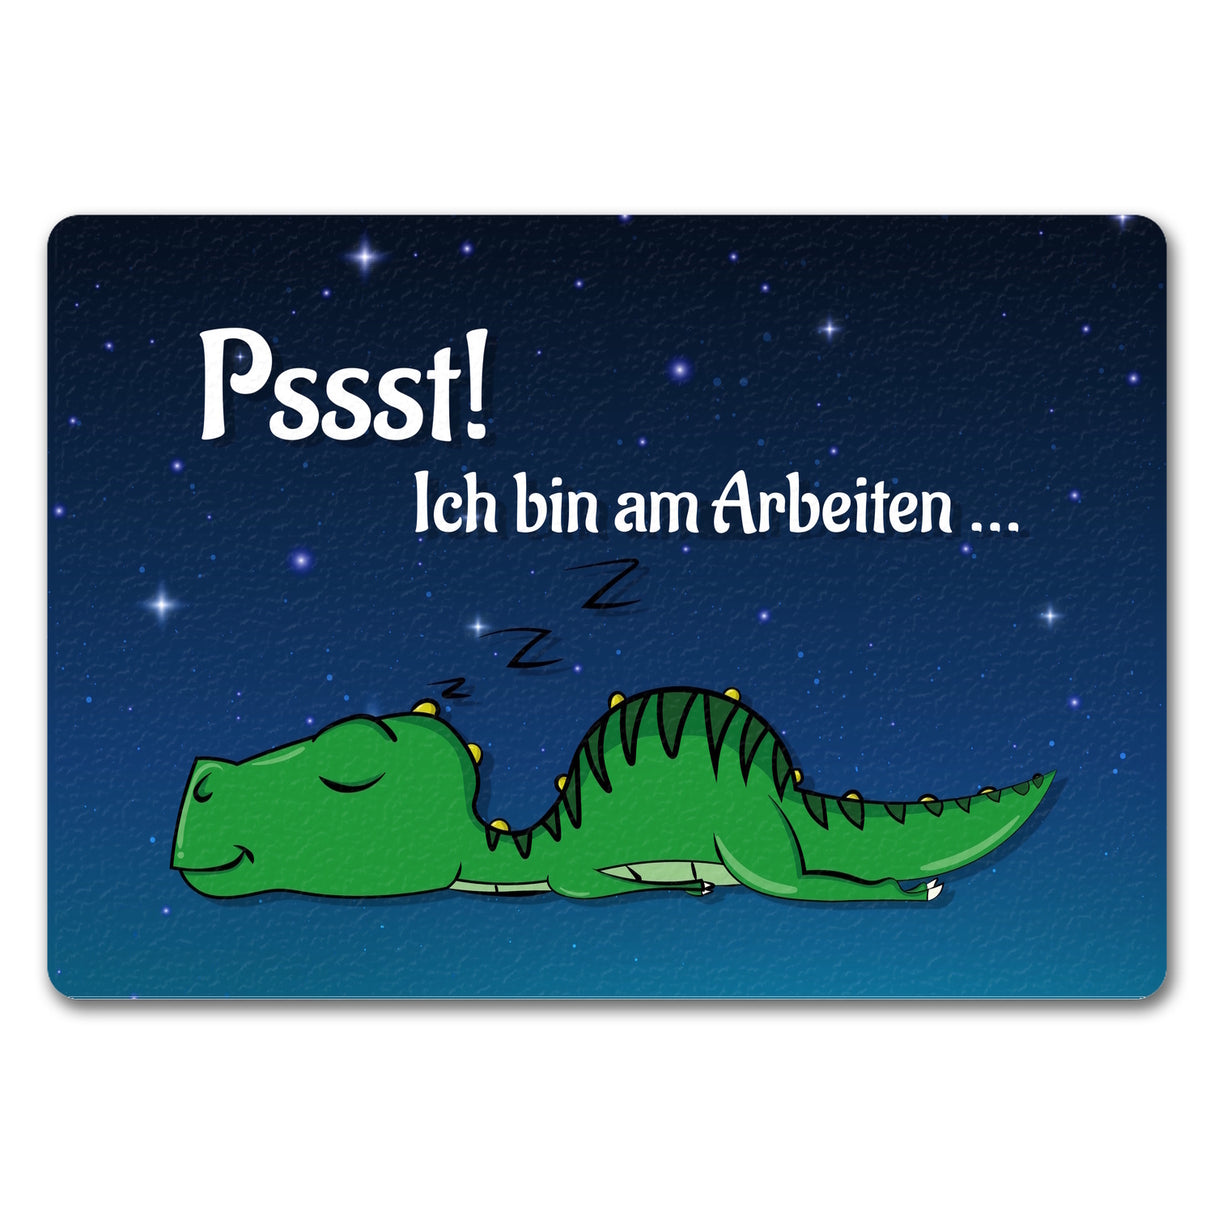 T-Rex Fußmatte in 35x50 cm mit Spruch Pssst! Bin am arbeiten und schlafendem Dino